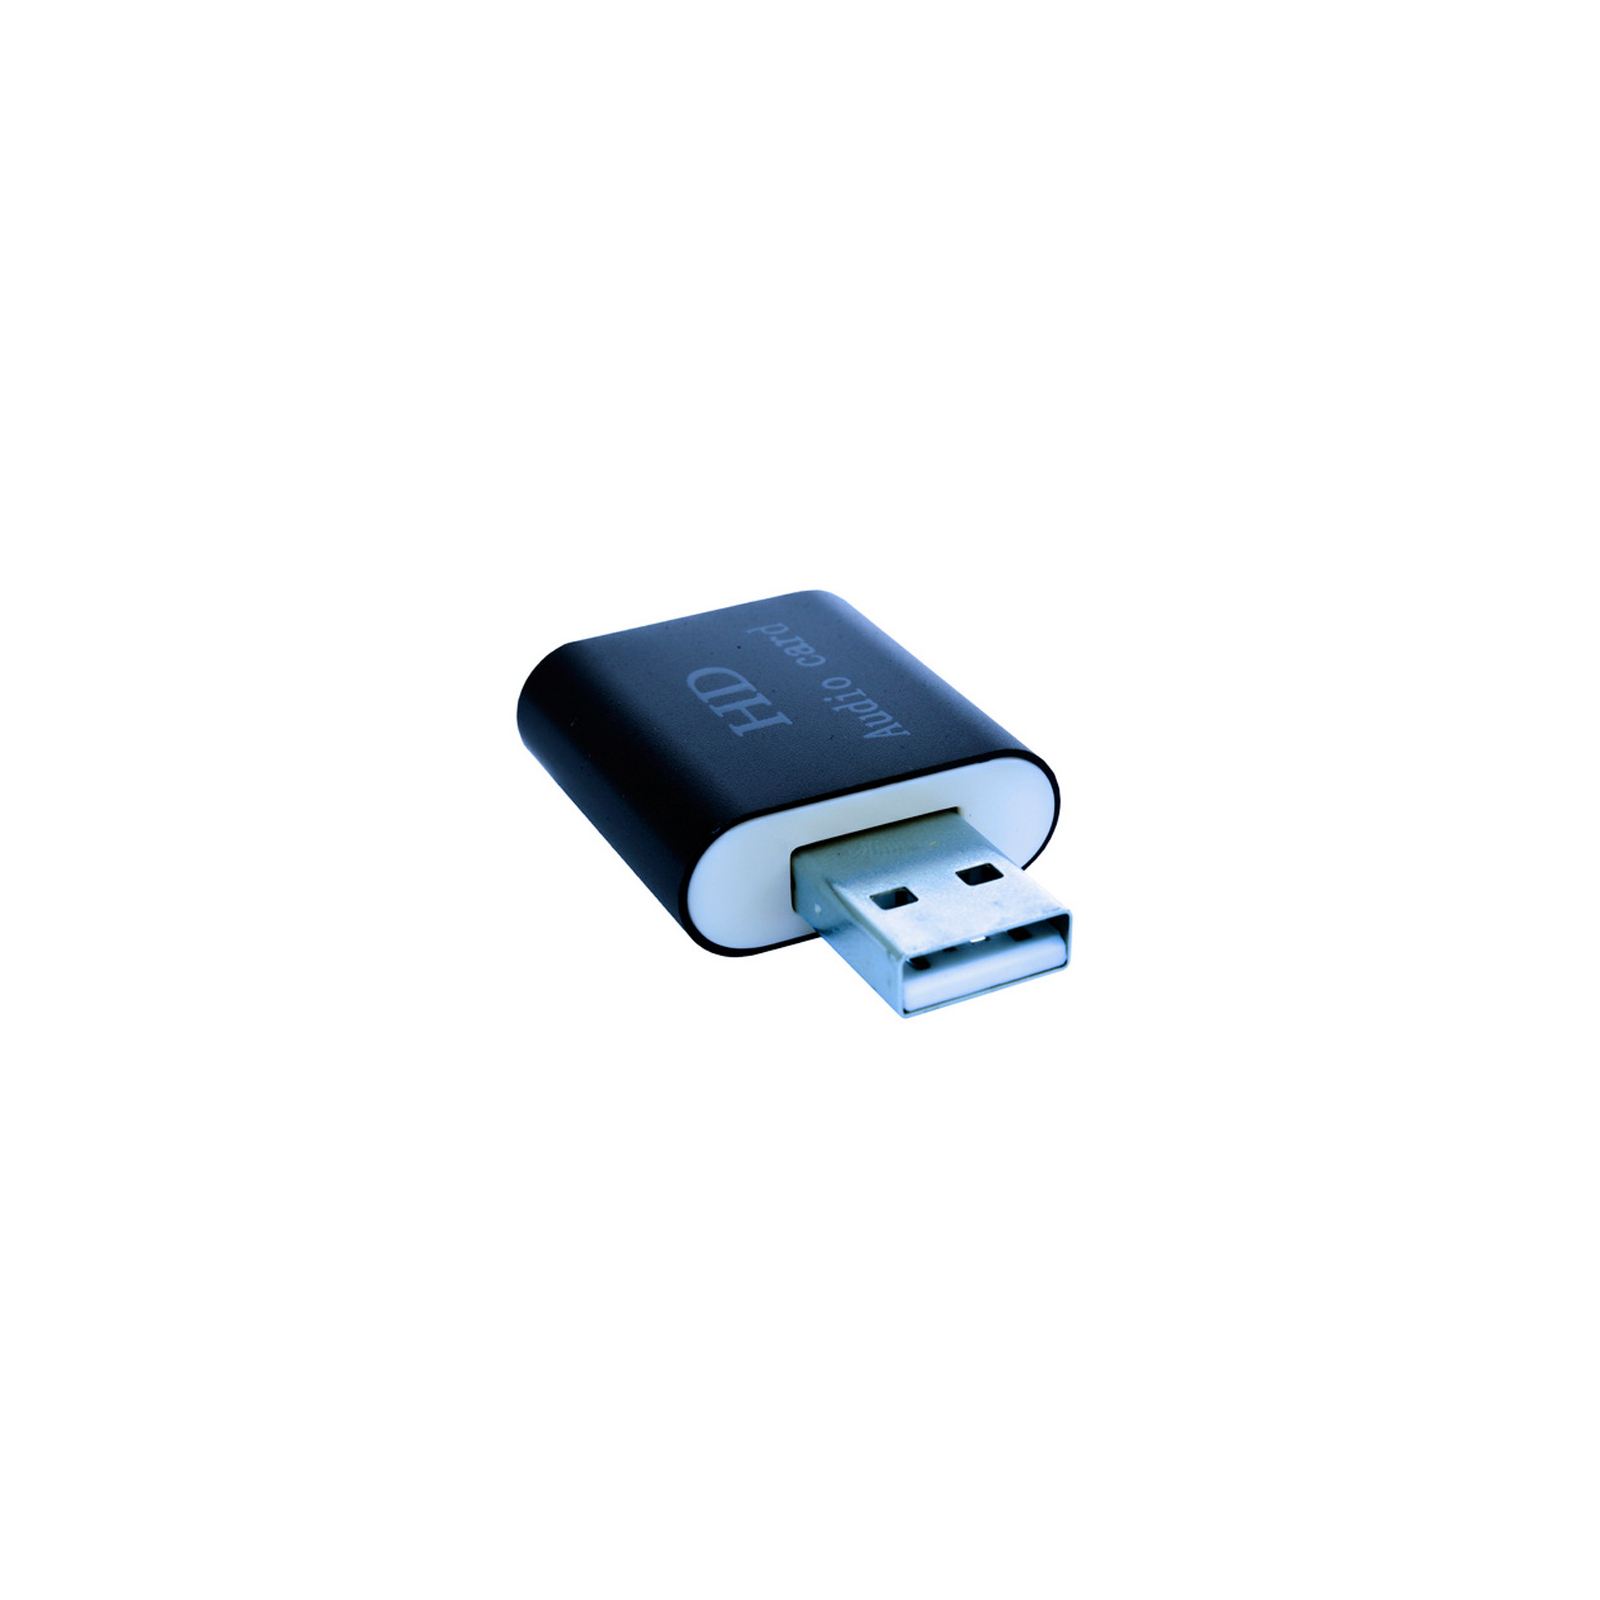 Звуковая плата Dynamode USB-SOUND7-ALU black изображение 3